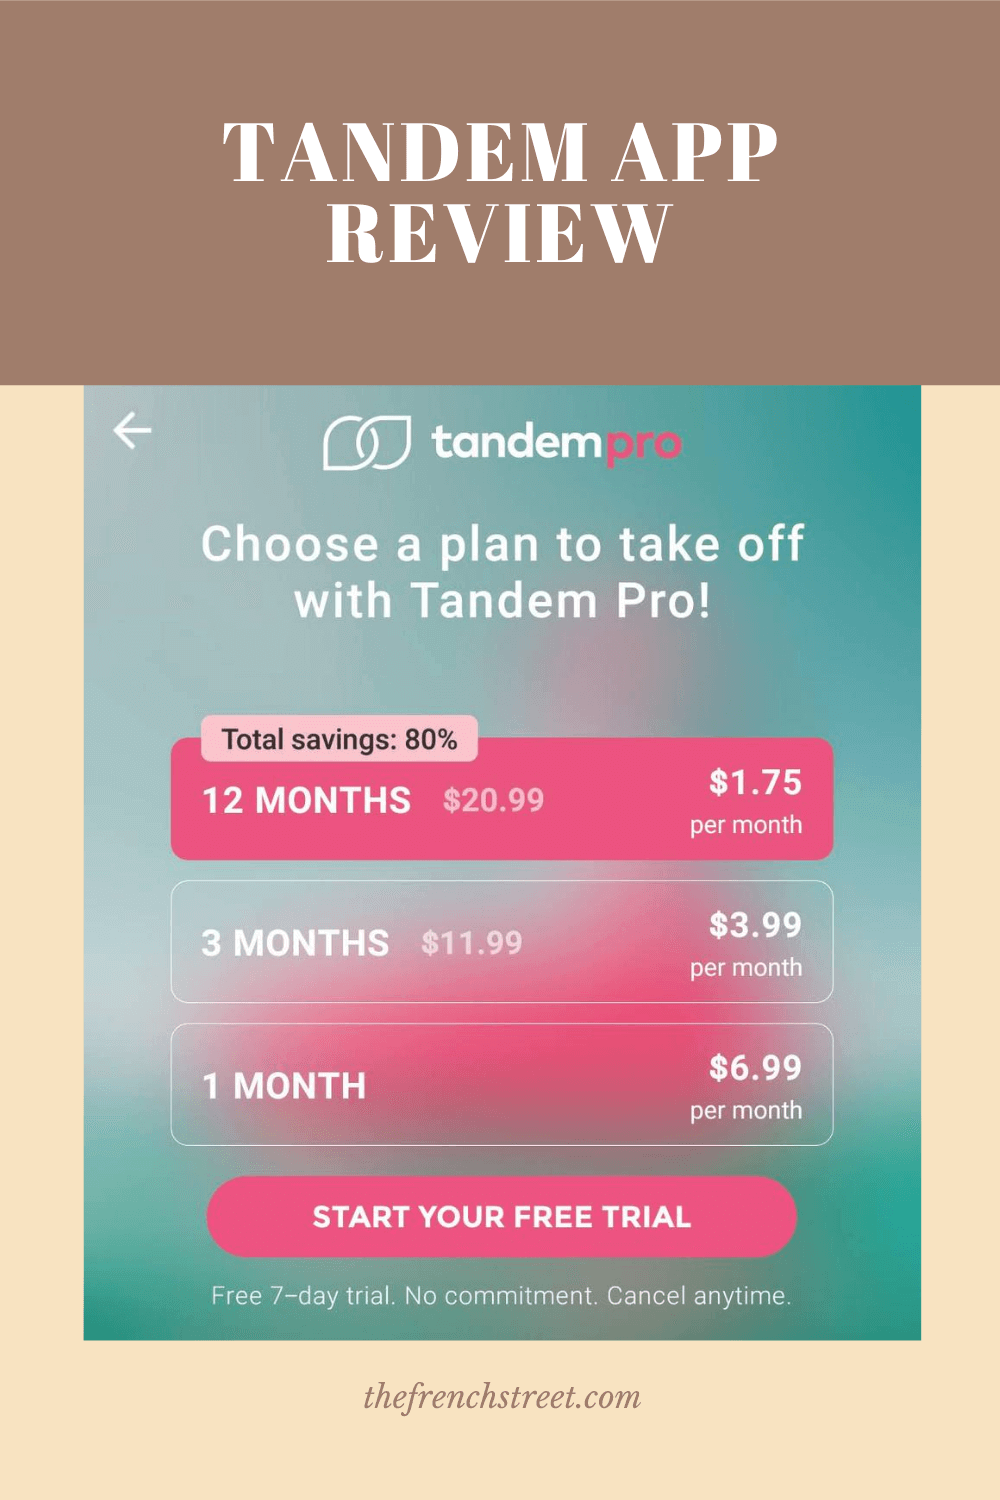 Tandem app review.